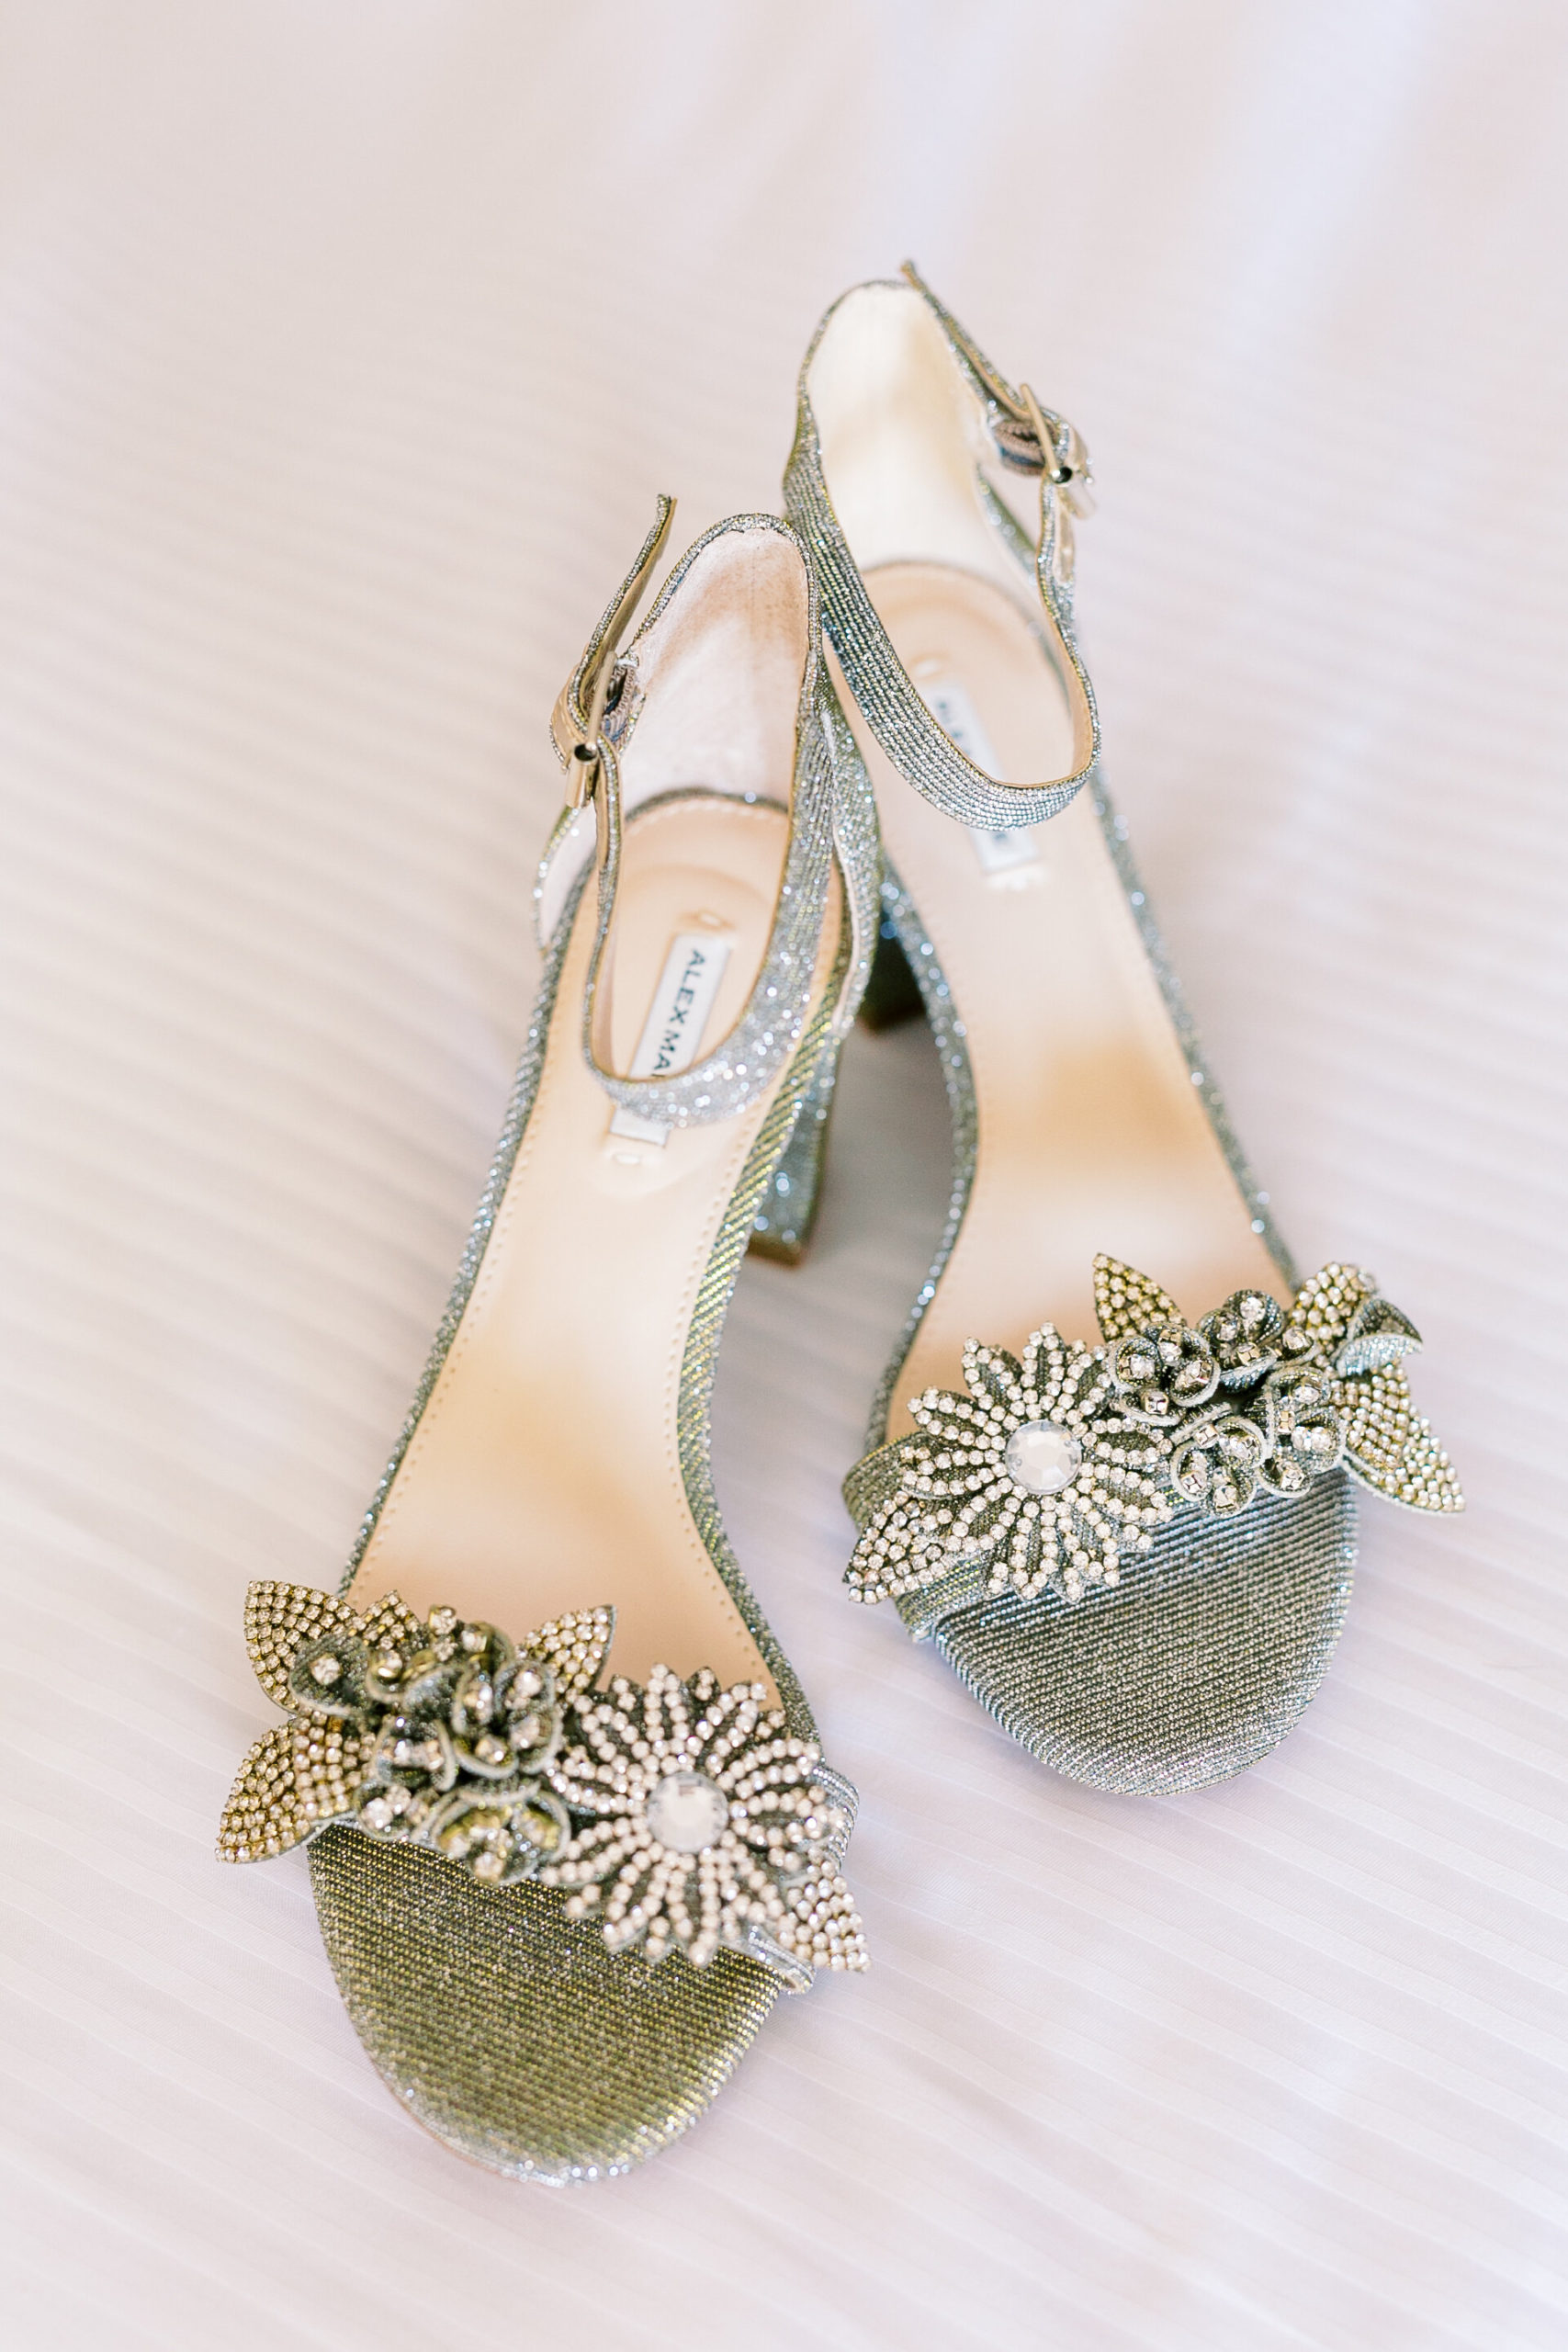 Luxury bridal shoes from Alex Maria at Hilton Head Island resort wedding.